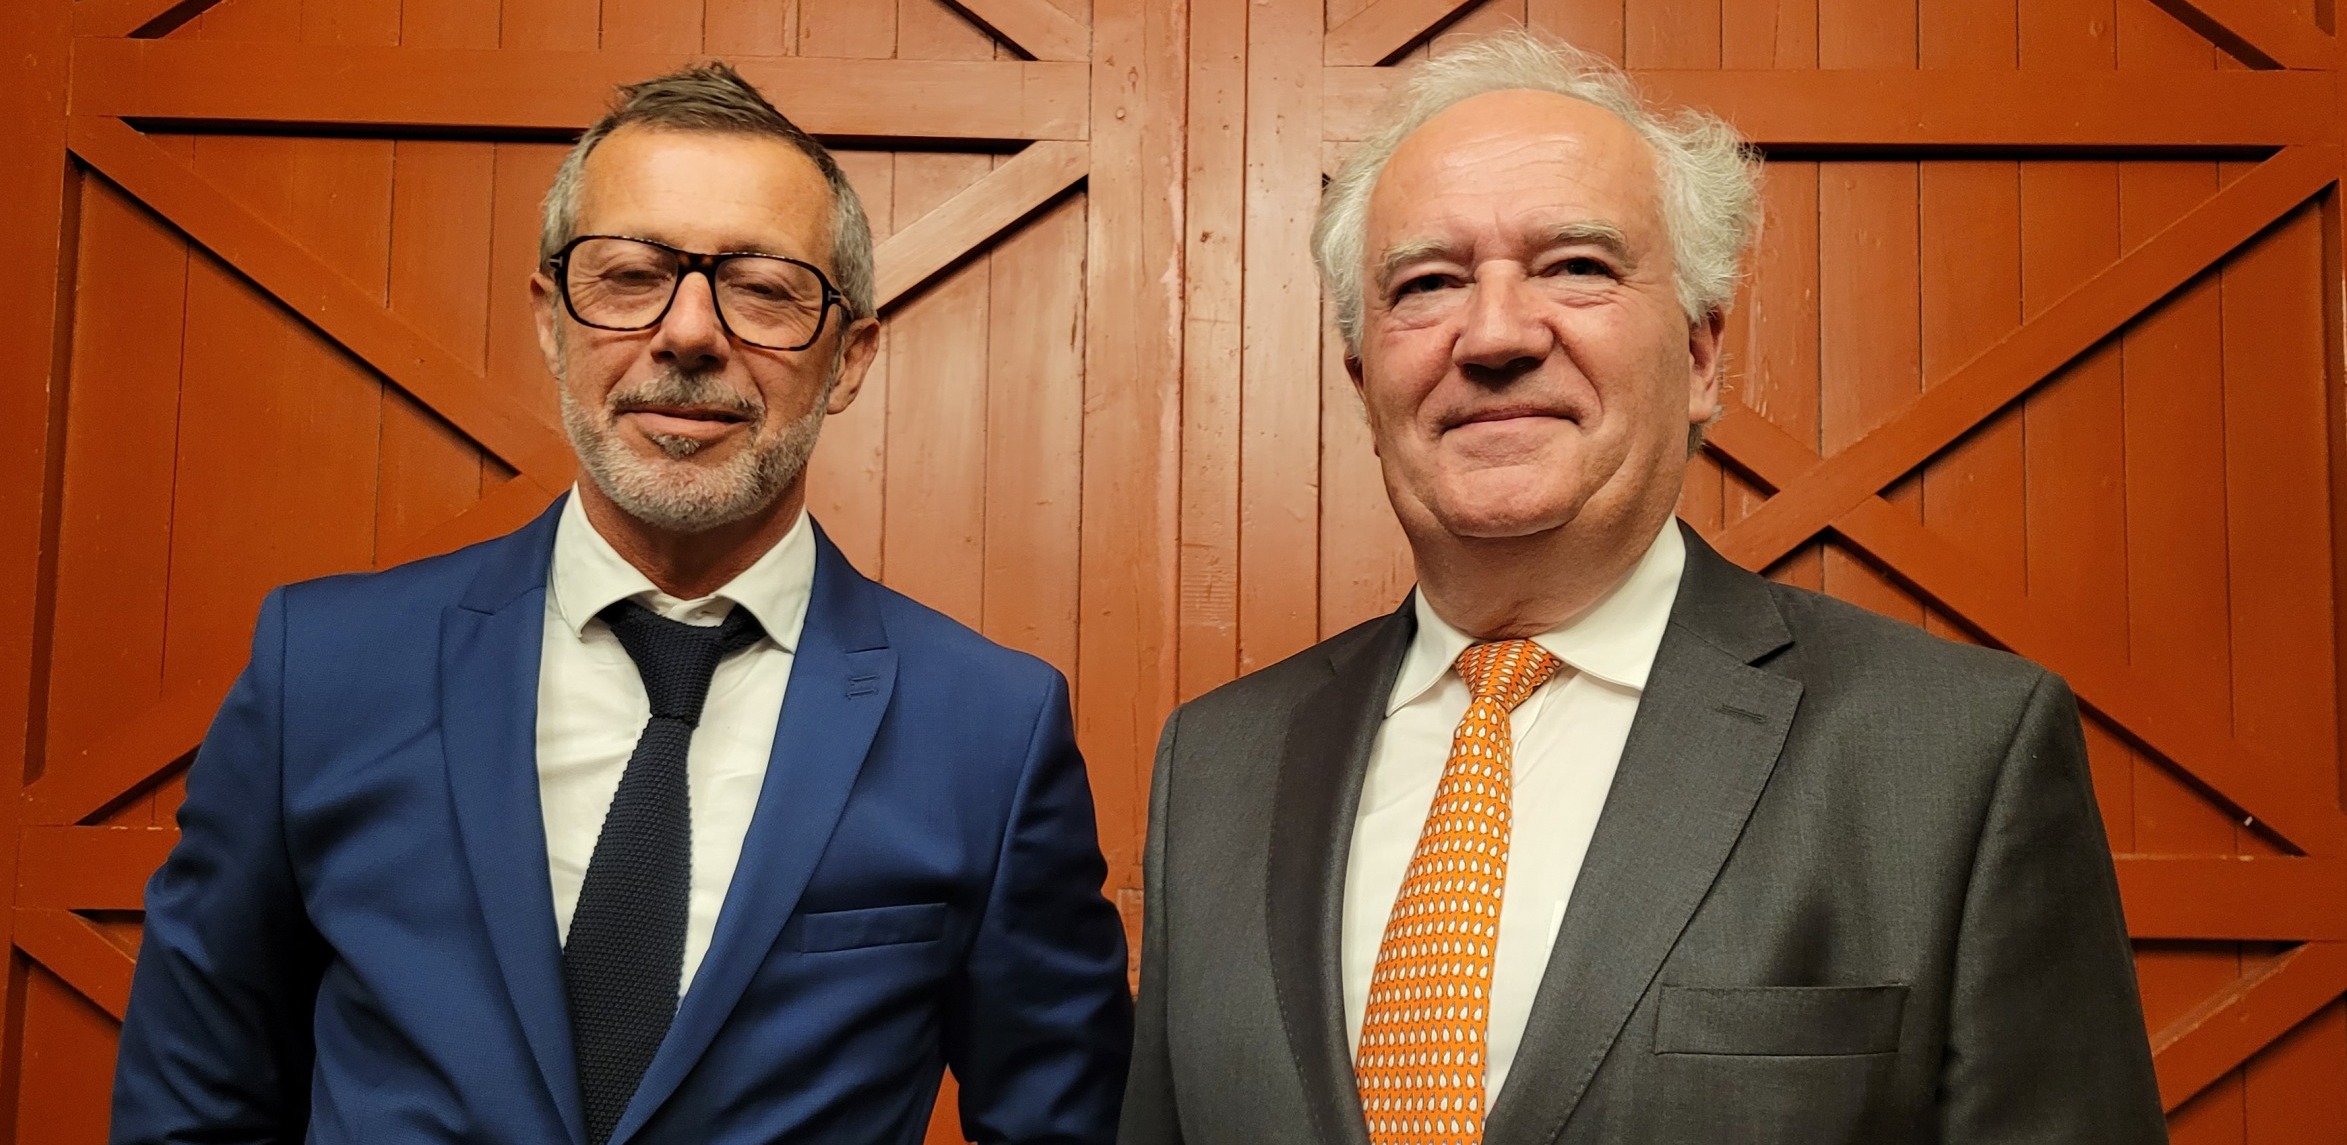 De gauche à droite, Philippe Aurières et Jérôme Loustalet, respectivement directeur général délégué et directeur général de CGL : « s’efforcer de bien faire avec éthique, rigueur, humilité et sollicitude ». 